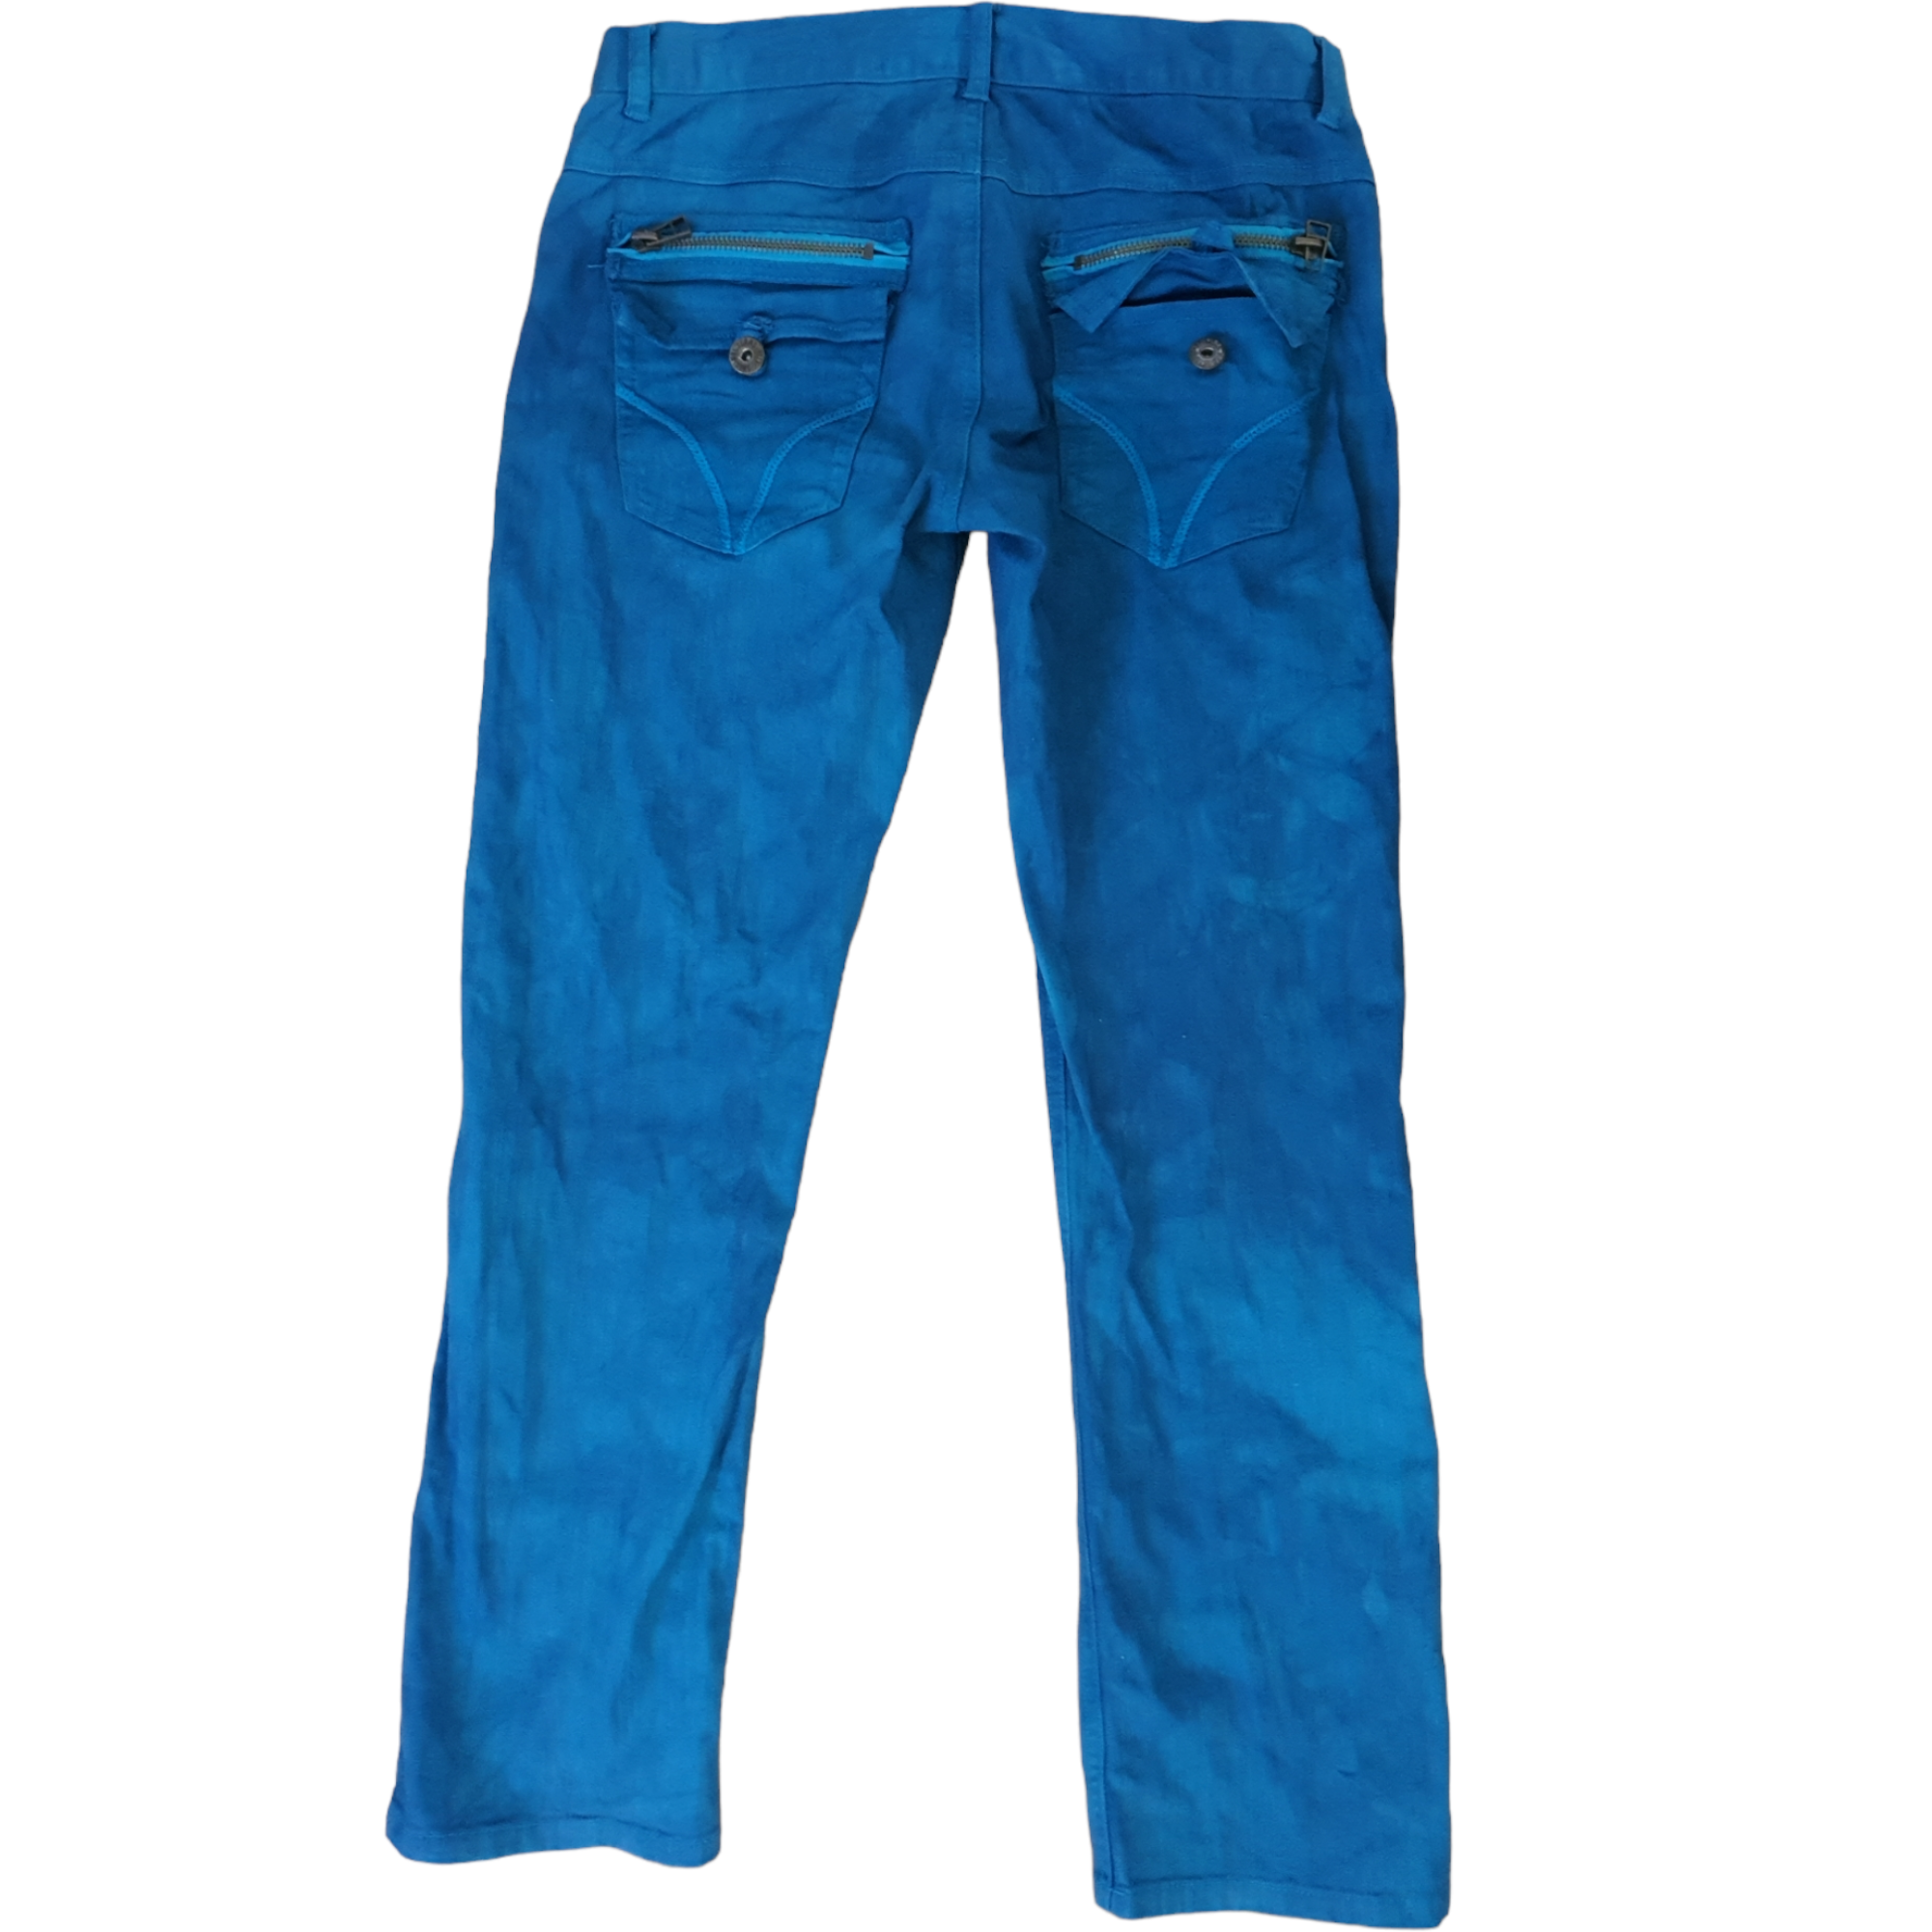 [34x32] Blue Jeans